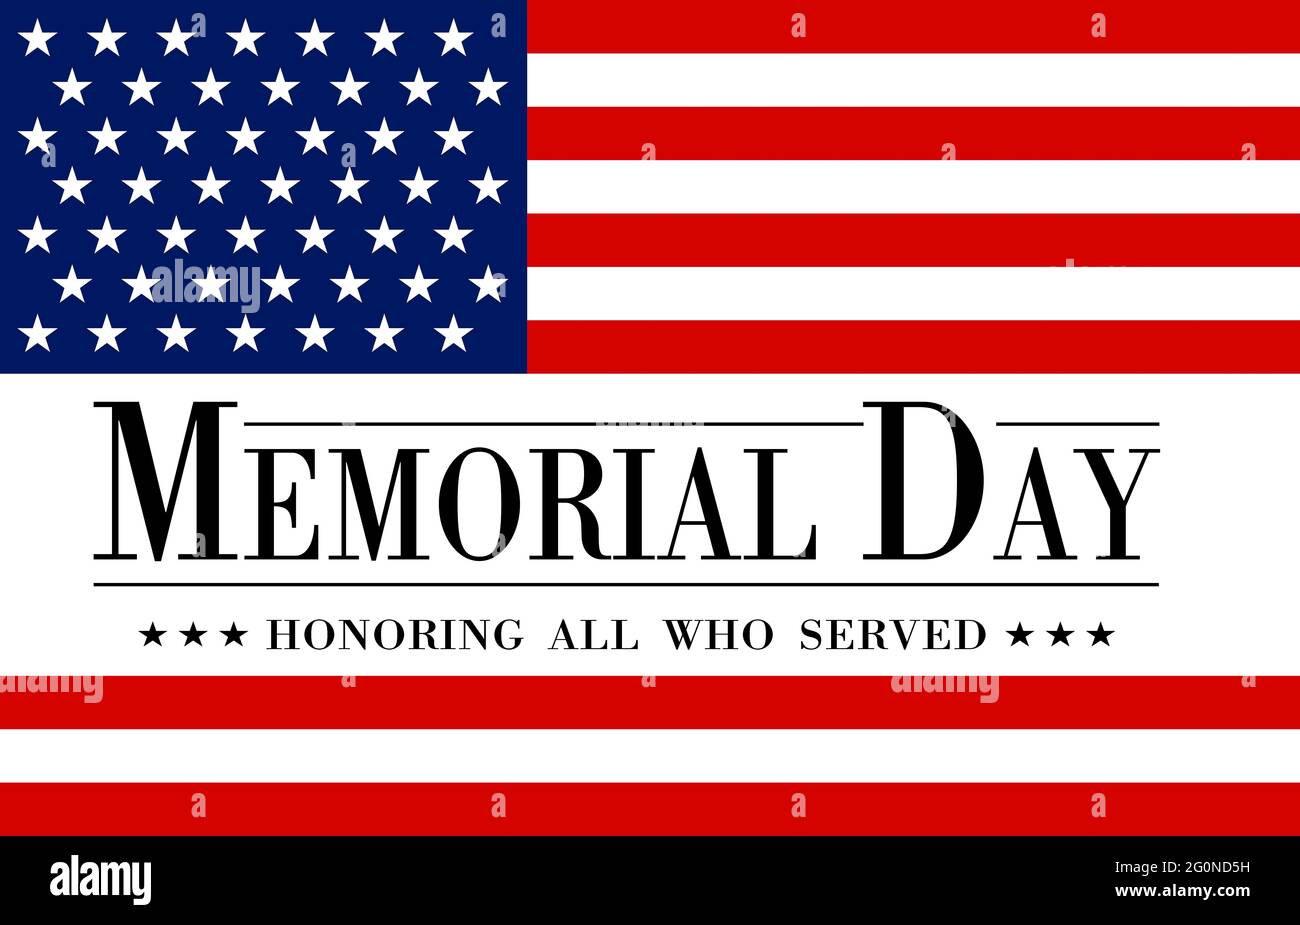 Illustrazione del banner o biglietto di auguri per la celebrazione del Memorial Day degli Stati Uniti, con testo e elementi della bandiera degli Stati Uniti. Foto Stock